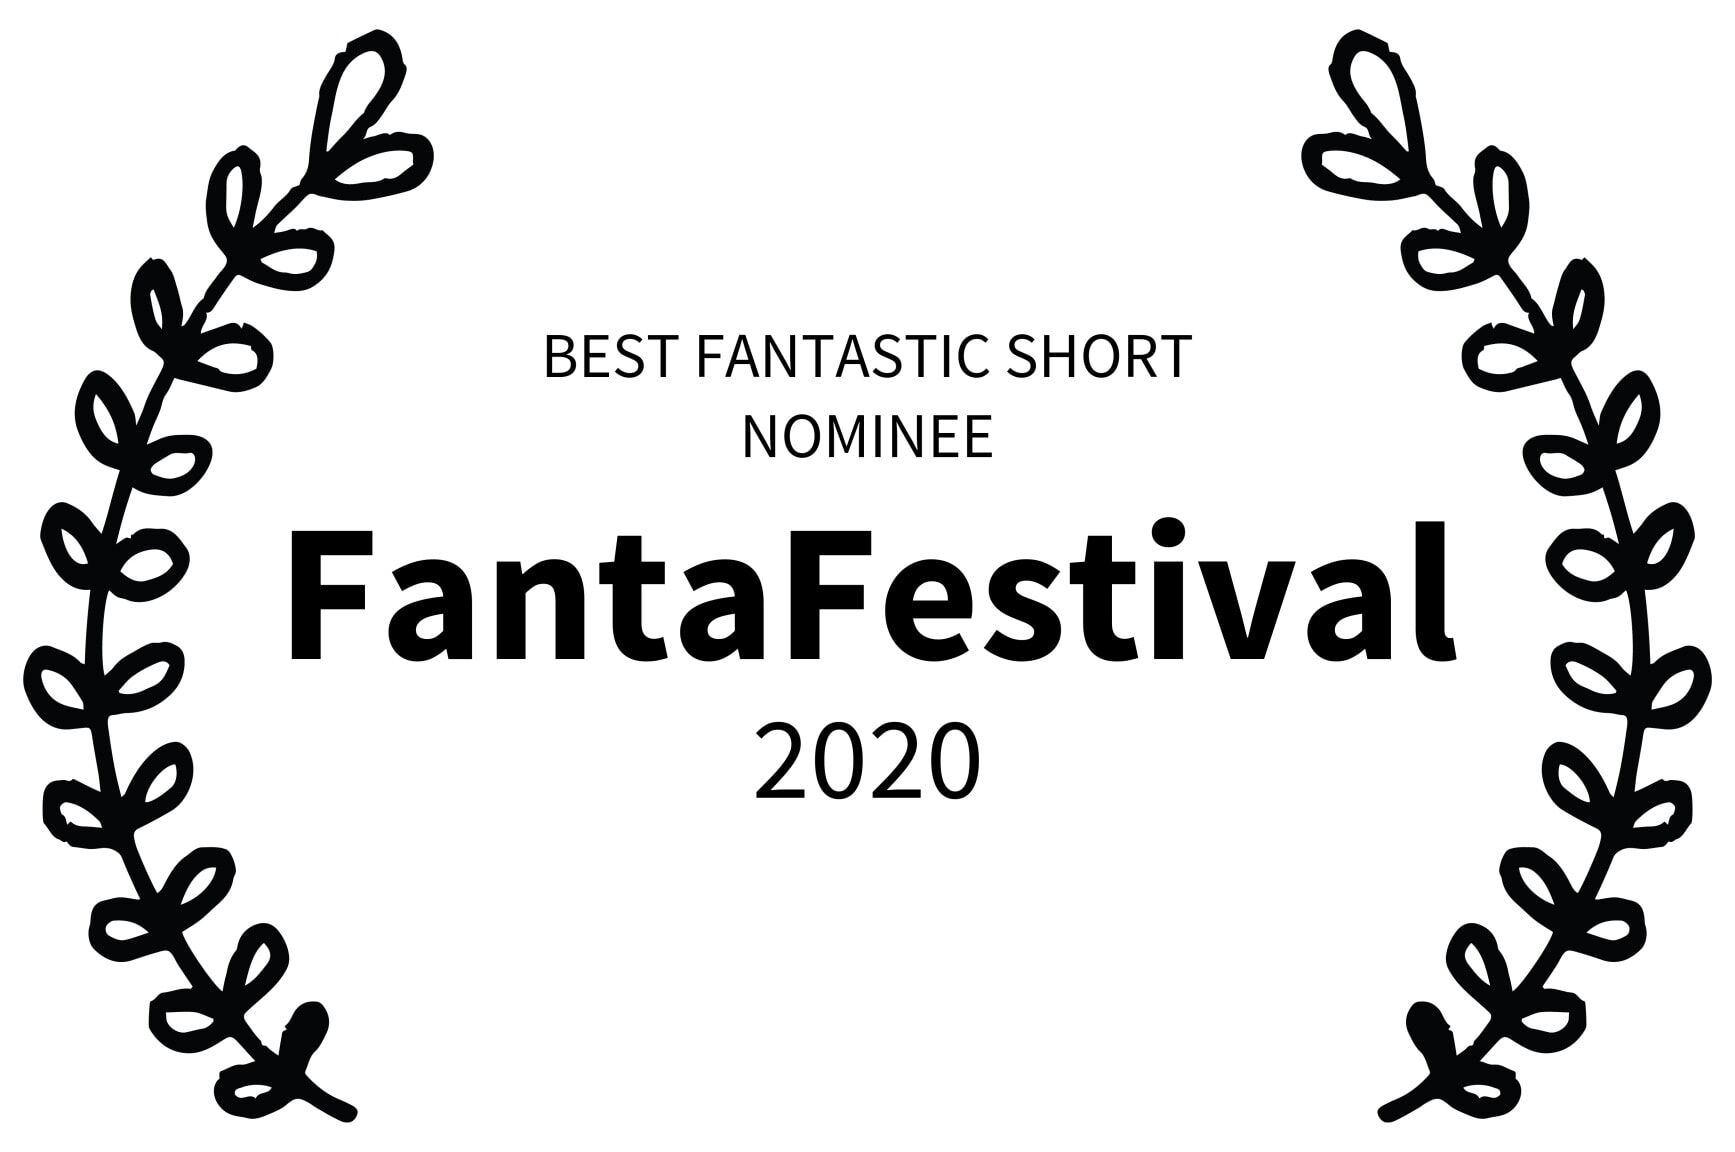 BEST FANTASTIC SHORT NOMINEE - FantaFestival - 2020